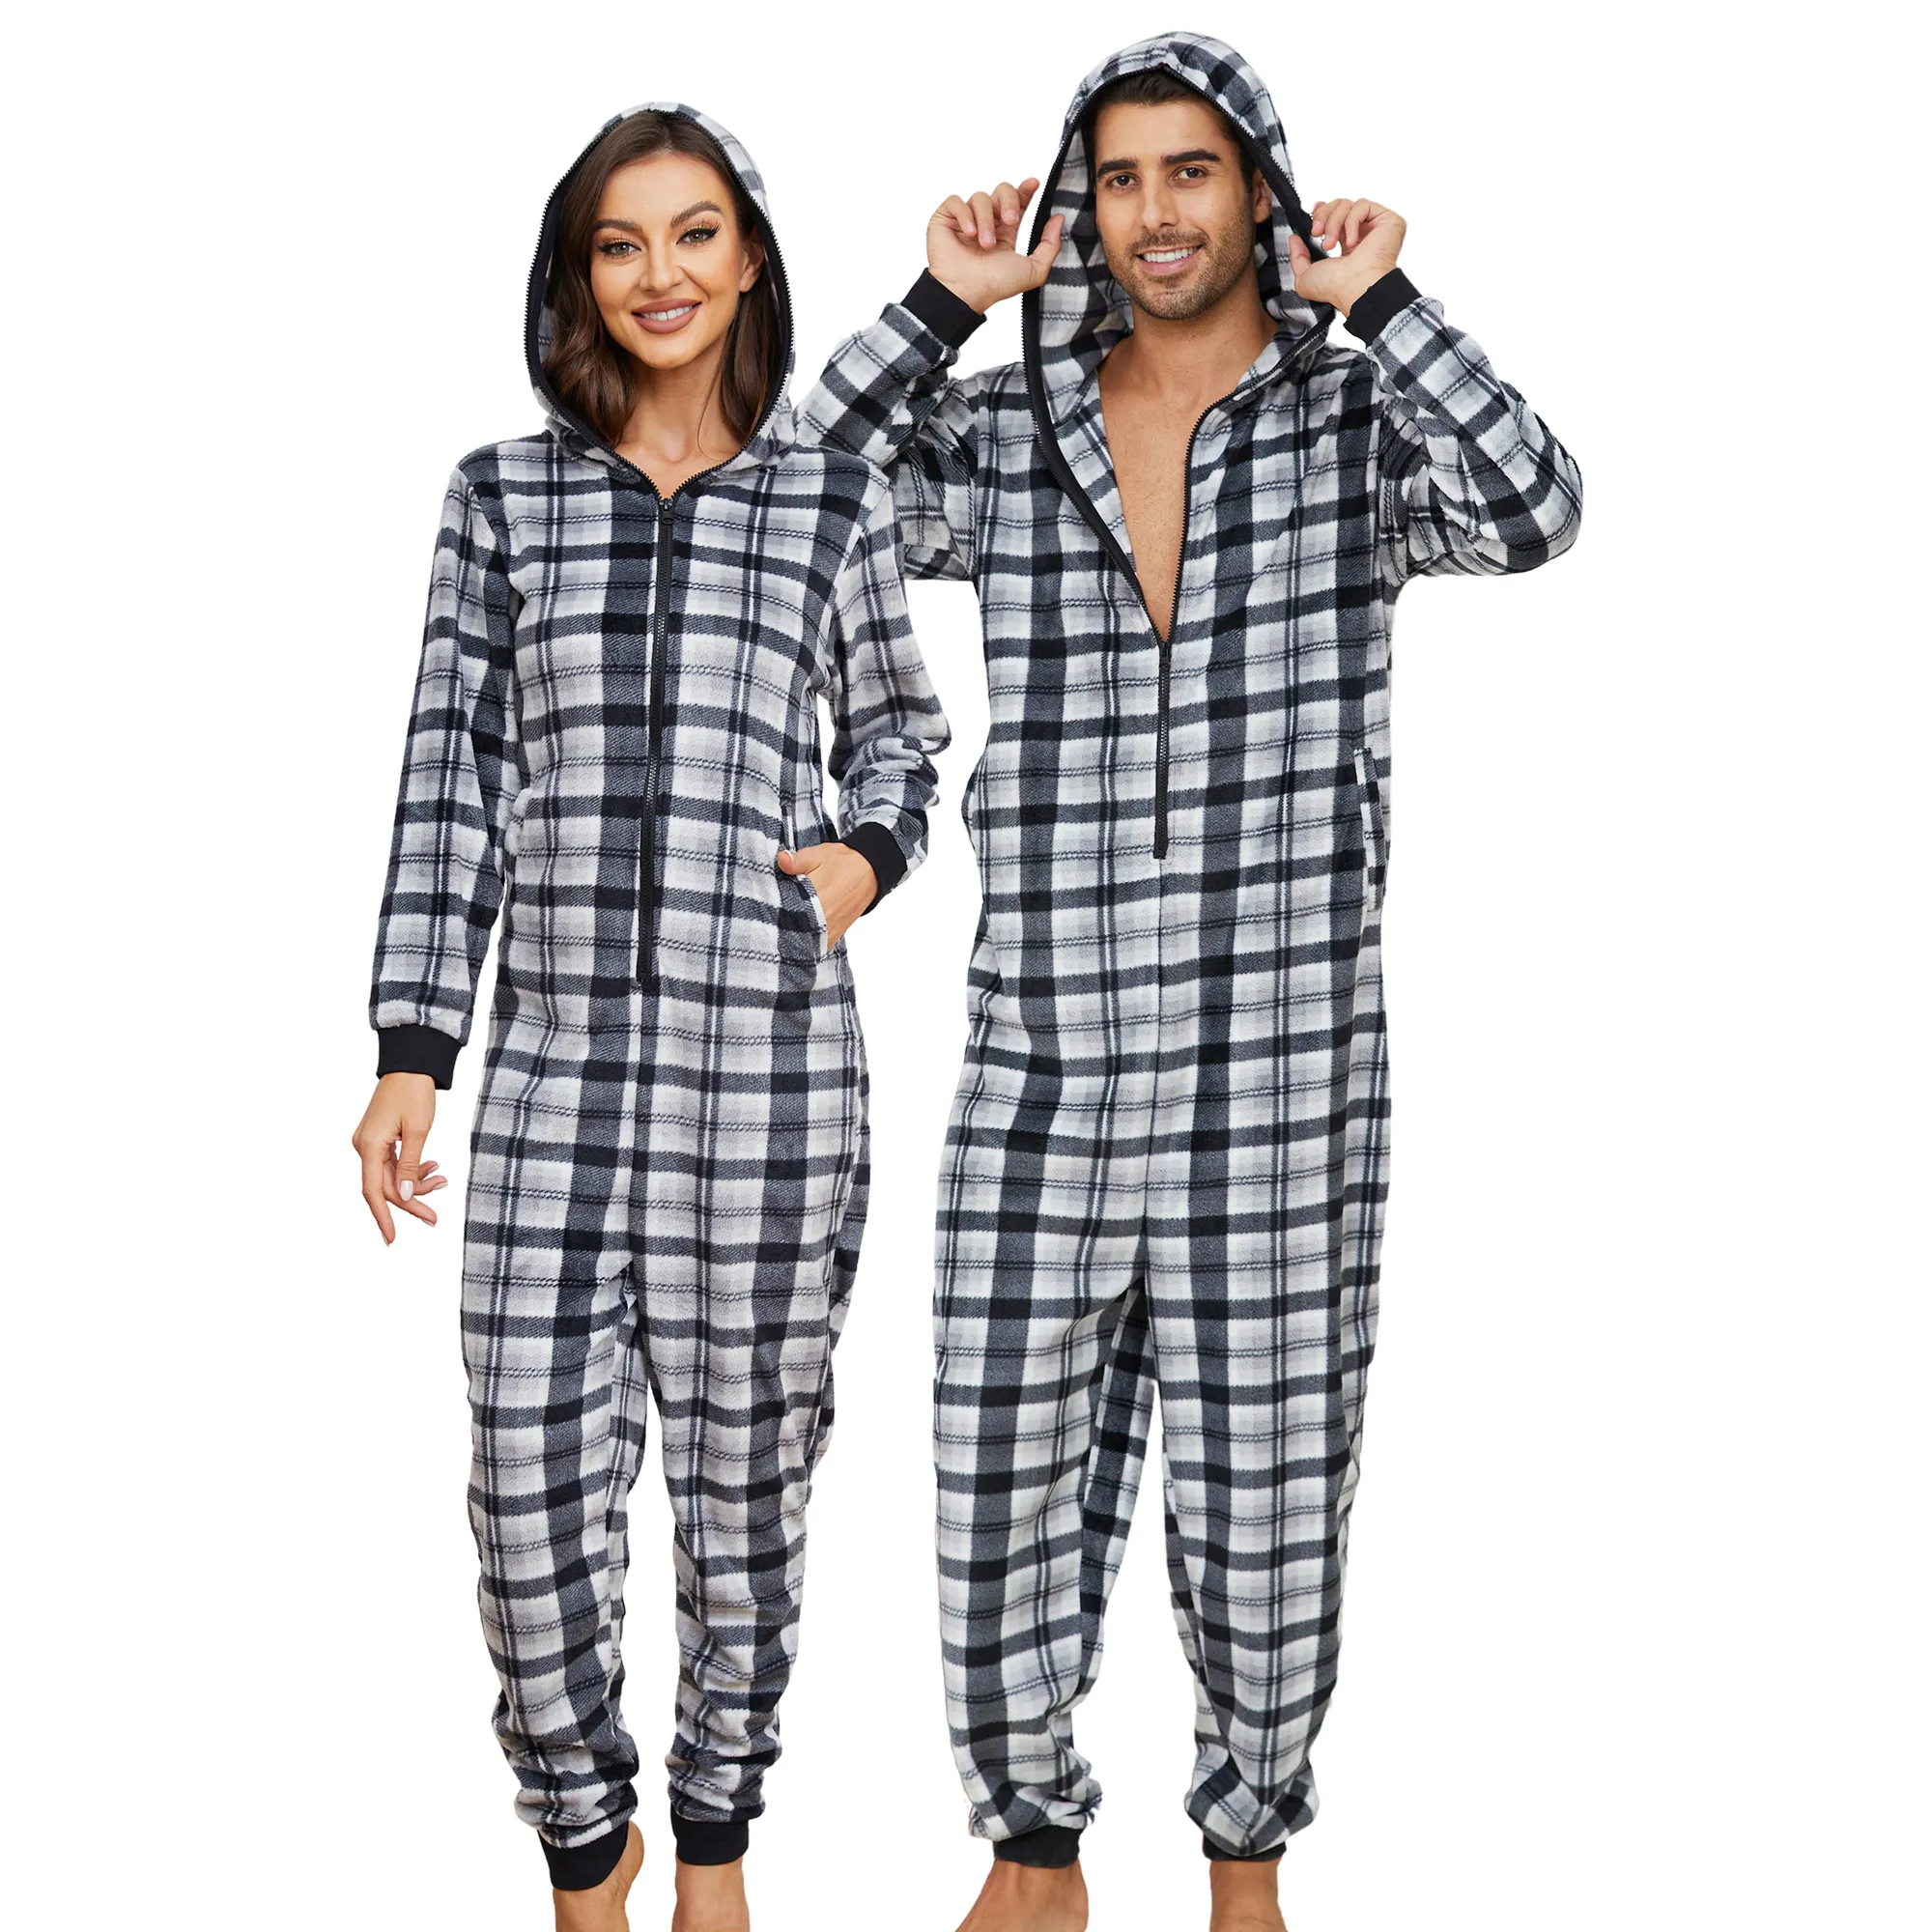 MQF Wholesales Custom useful Long Sleeve winter unisex adult onesie pajamas in winter